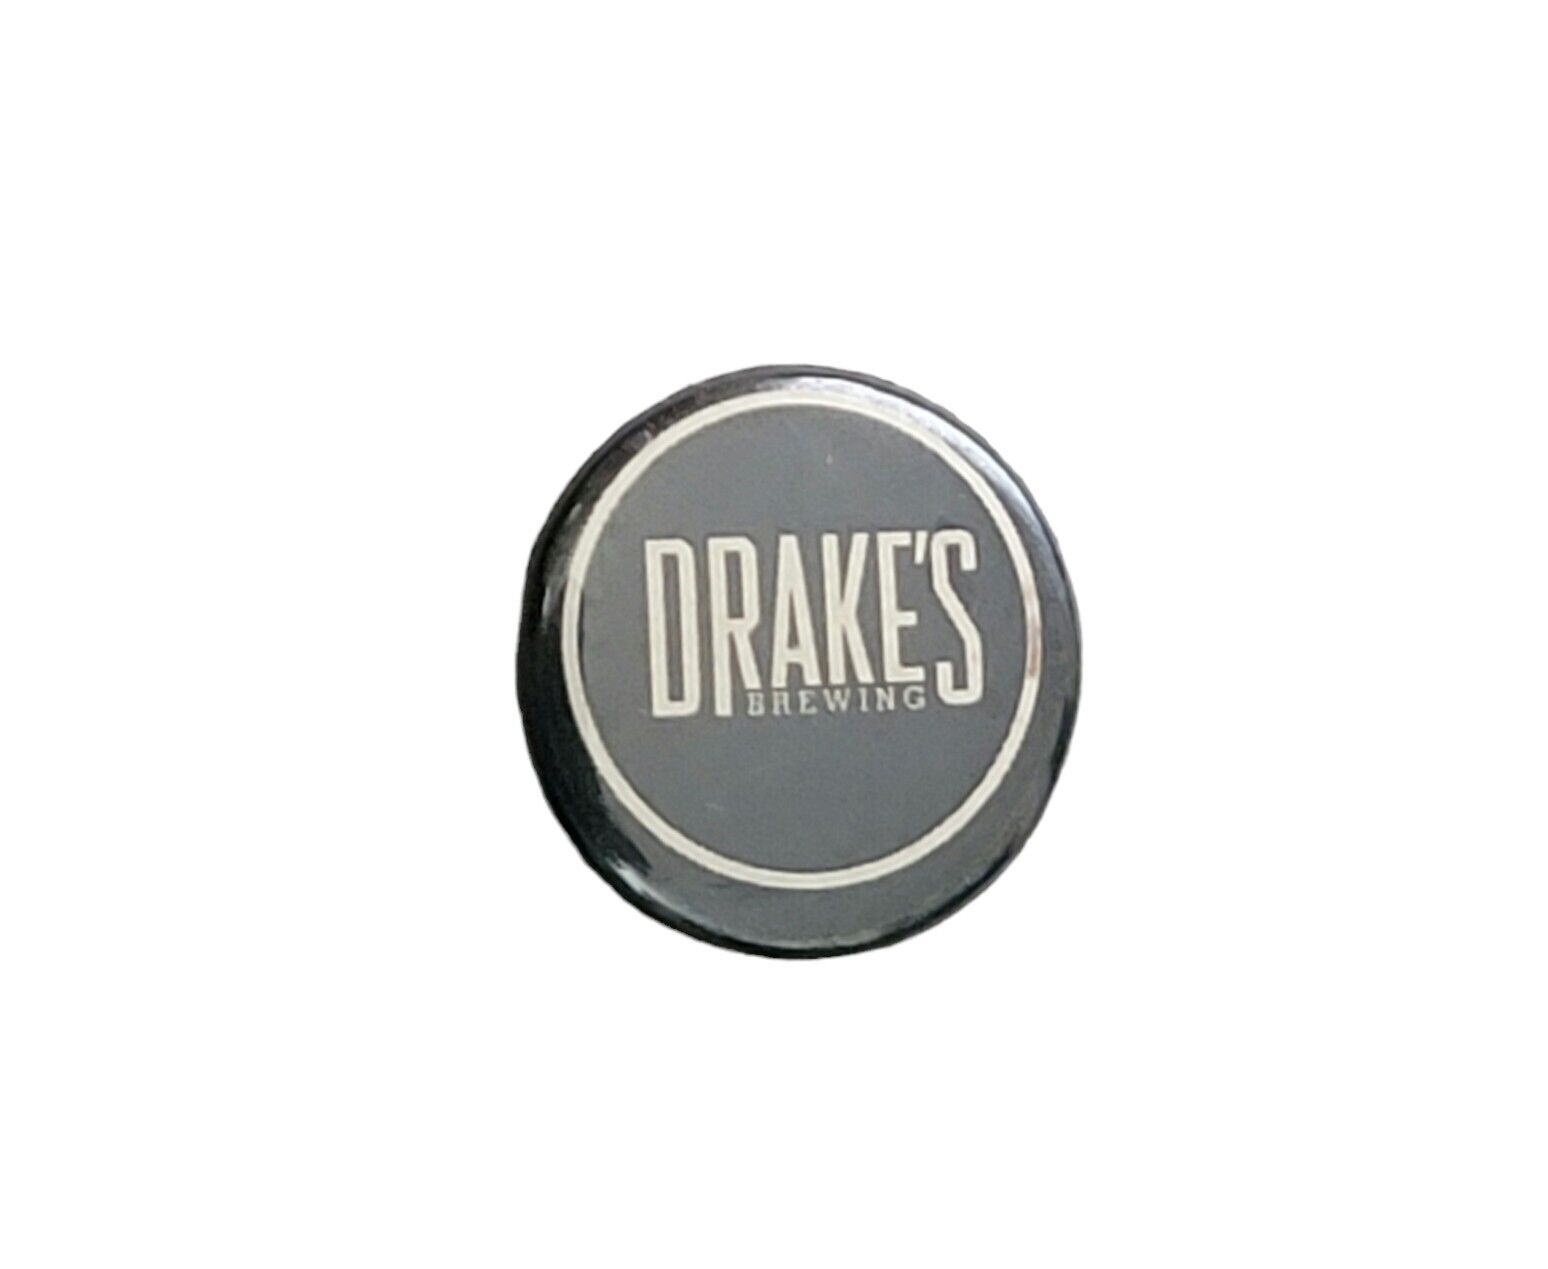 Vintage Drakes Brewing Advertising Scarce Promotional Pin